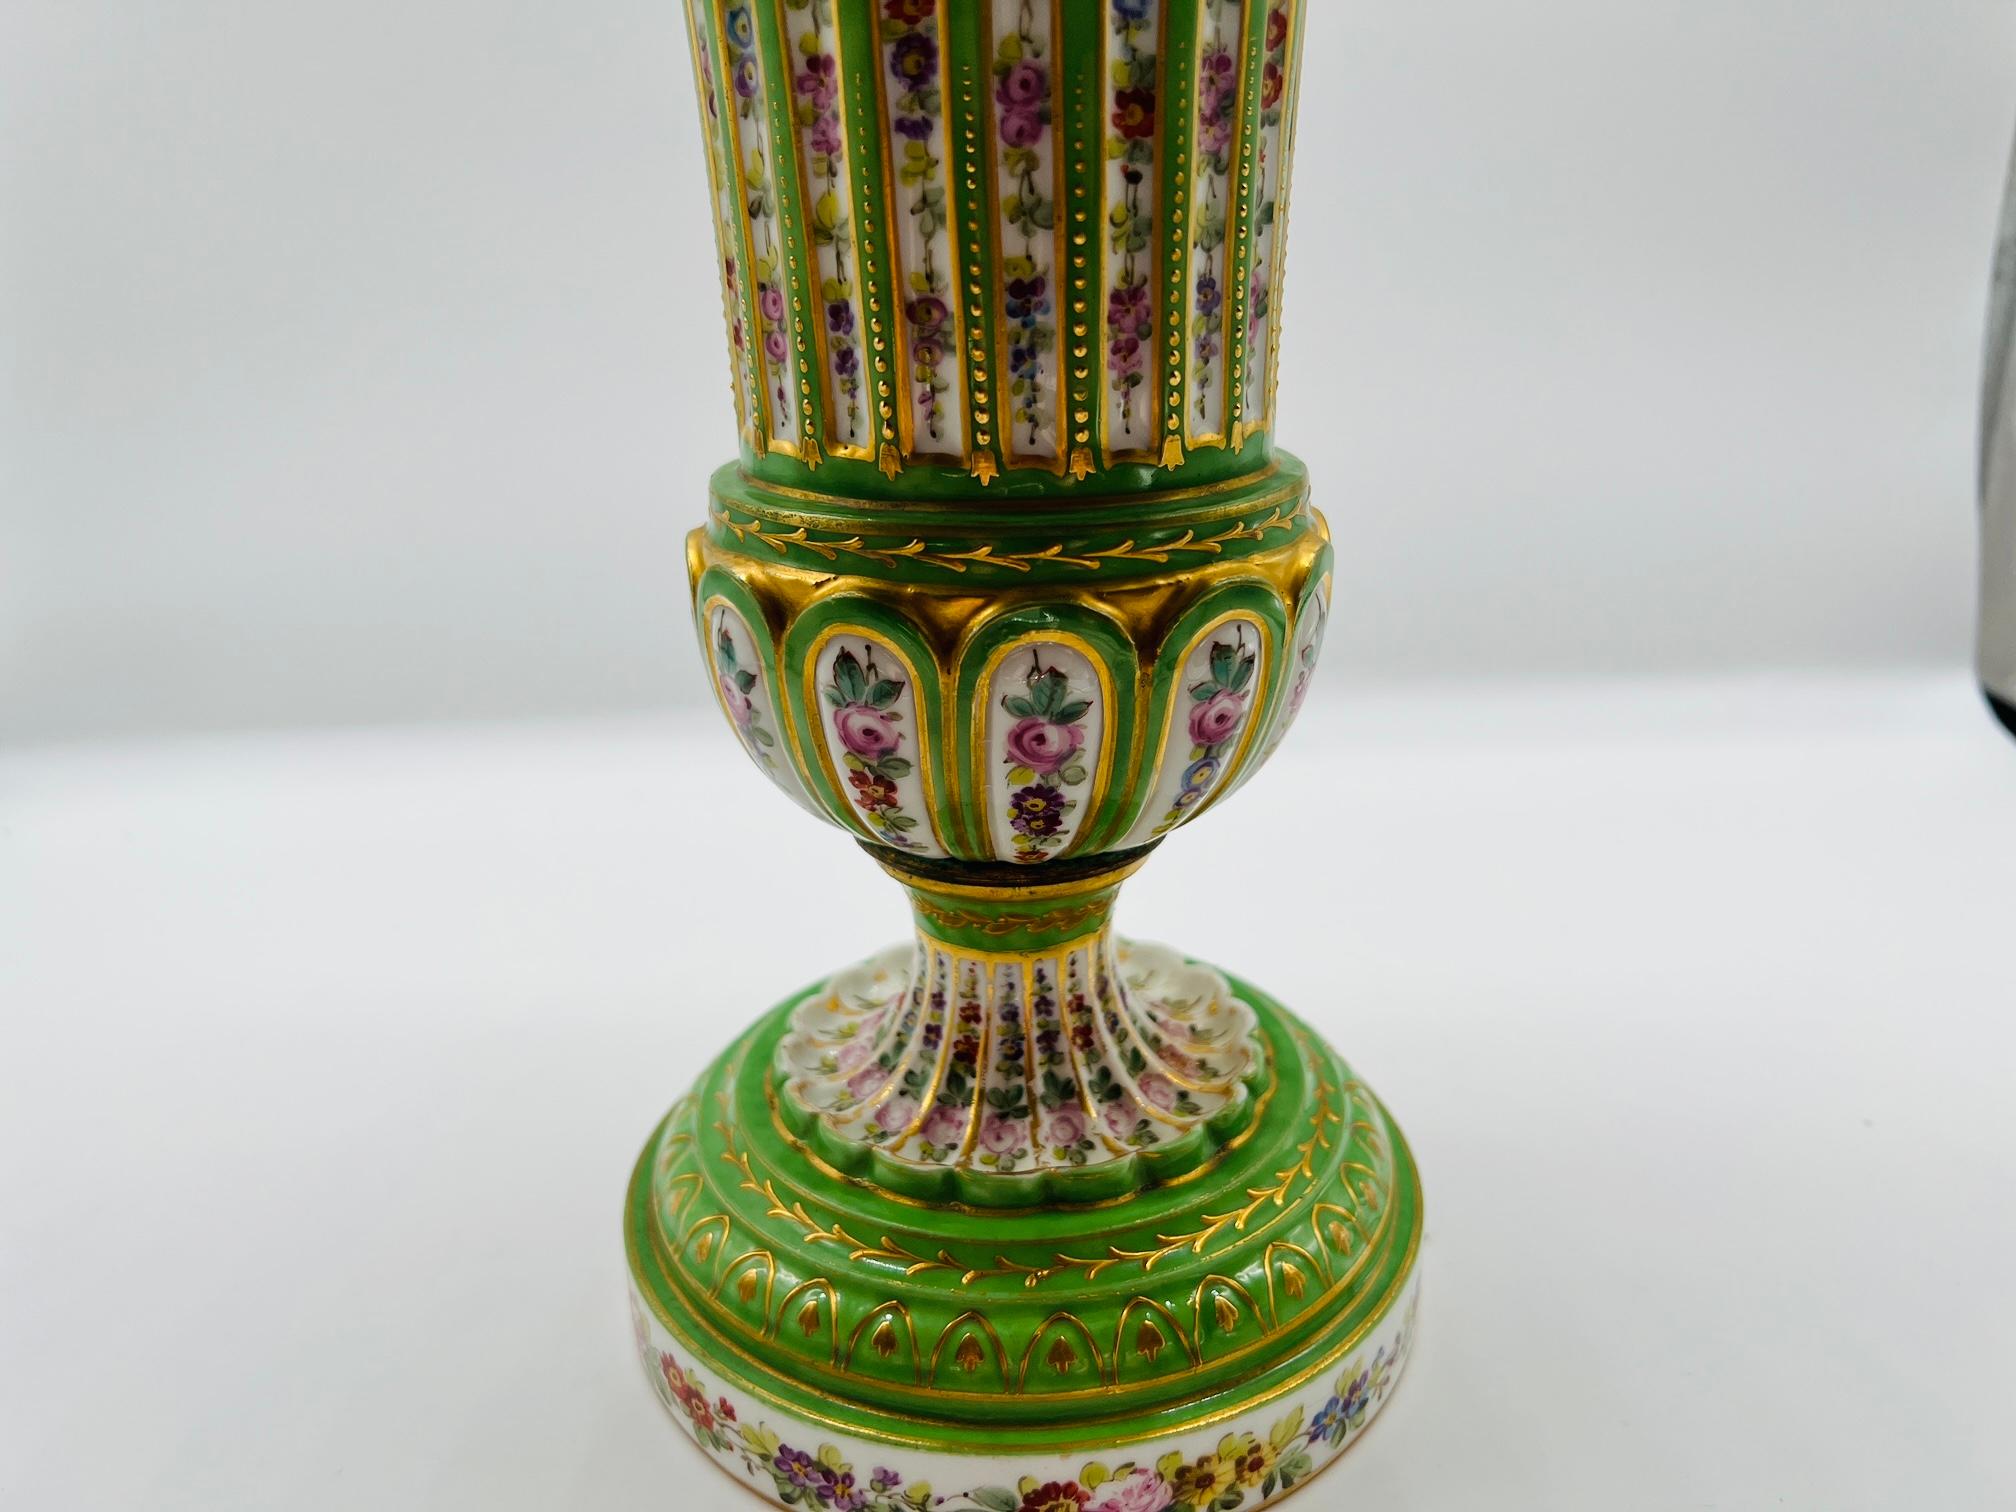 Antique French Sevres Porcelain Floral Enamel Decorated Vase C. 1770 For Sale 1